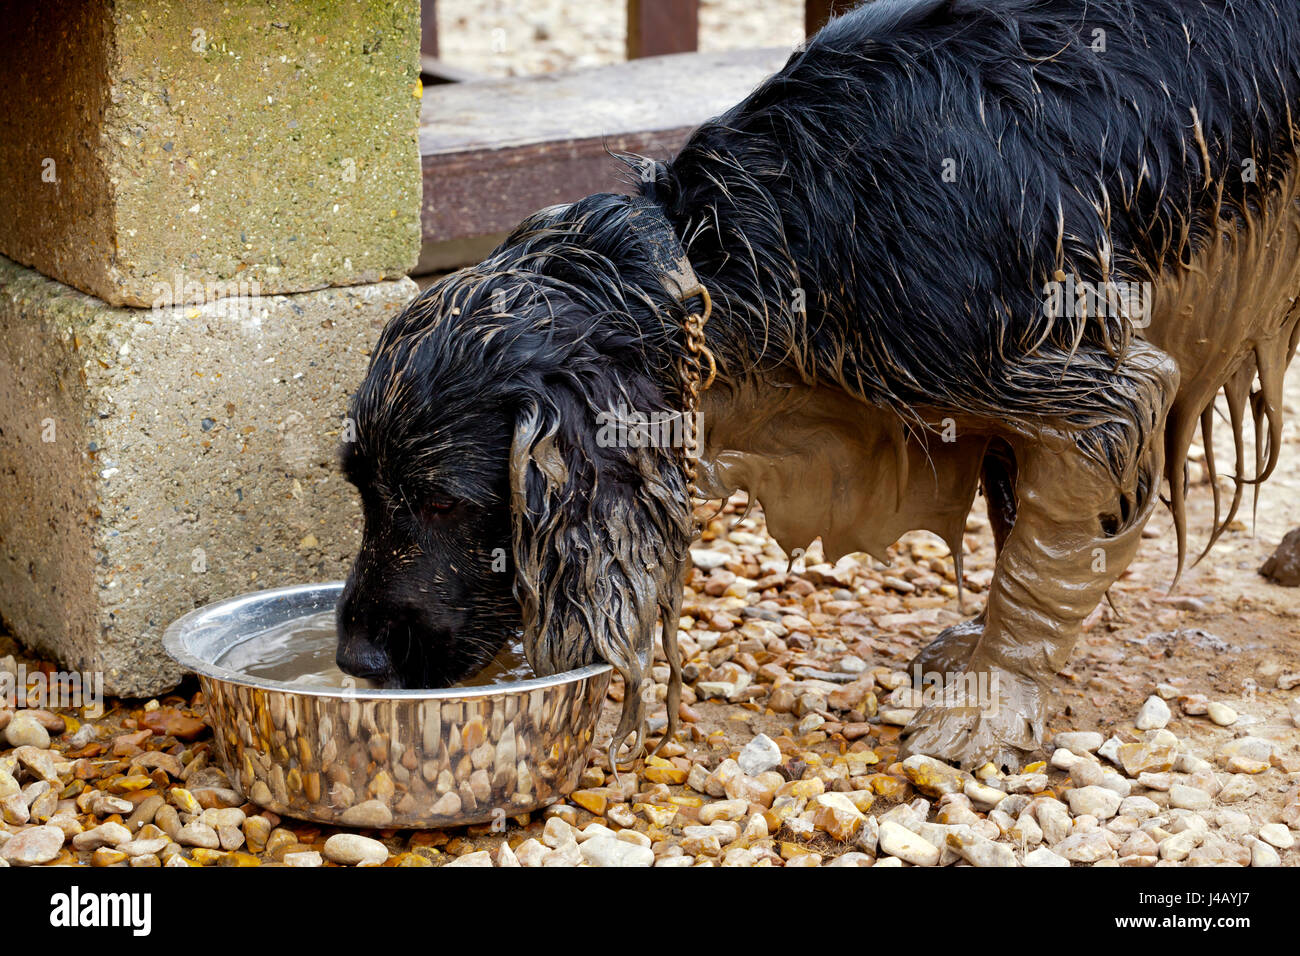 L'eau et la boue cocker travail chien domestique de boire un bol en métal Banque D'Images